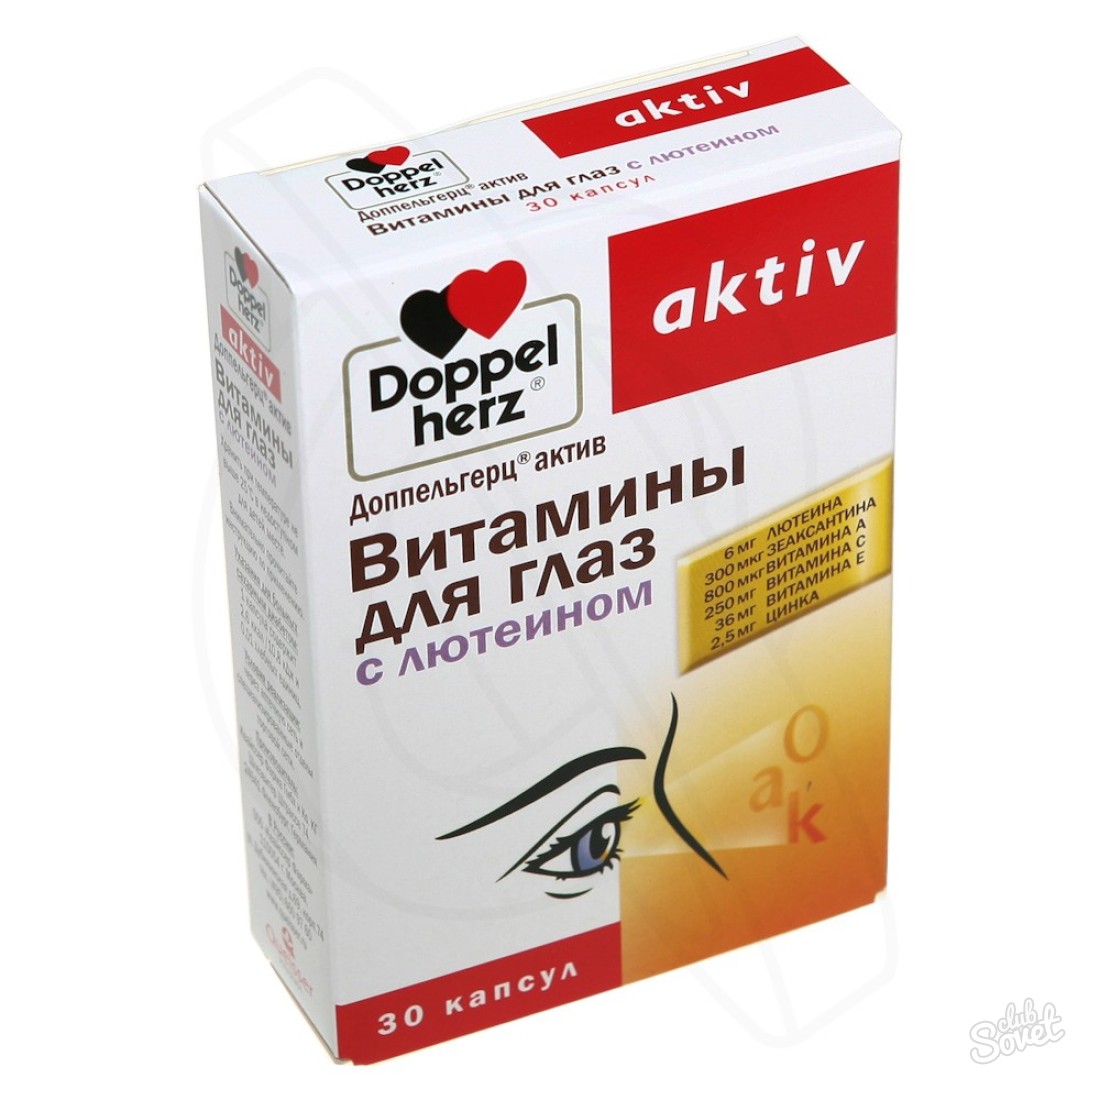 Doppeoplez vitamini za oči: upute za uporabu